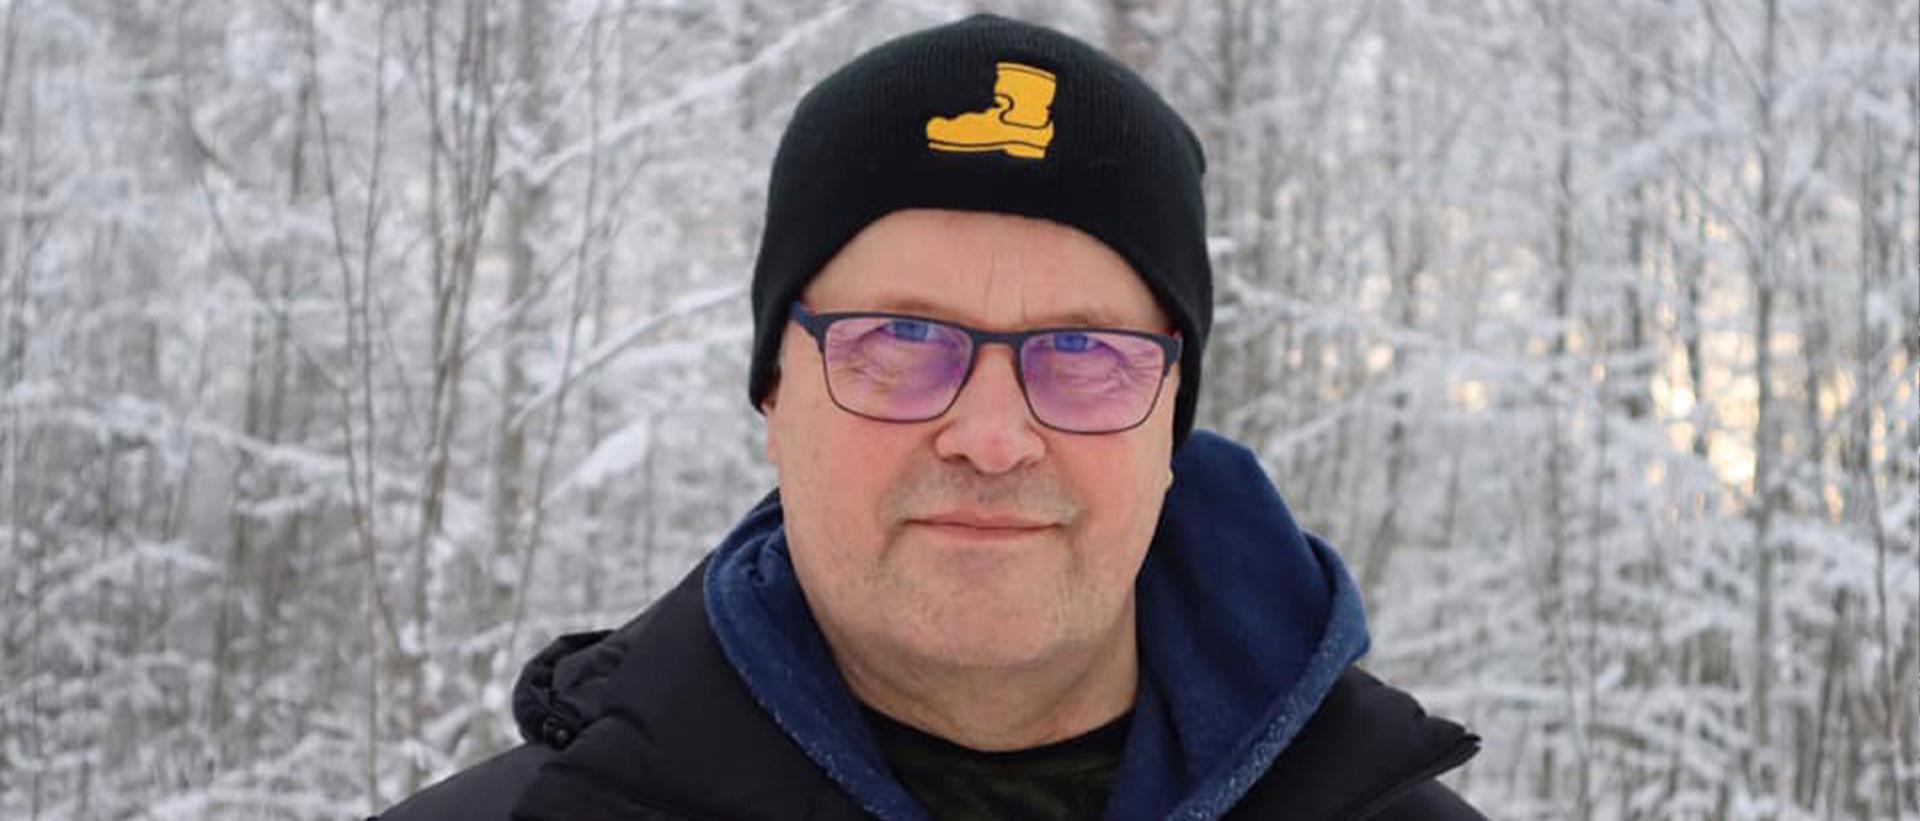 Johtava erityisnuorisotyöntekijä Juha Kasari lähikuvassa talvisessa maisemassa Saapas-pipo päässä